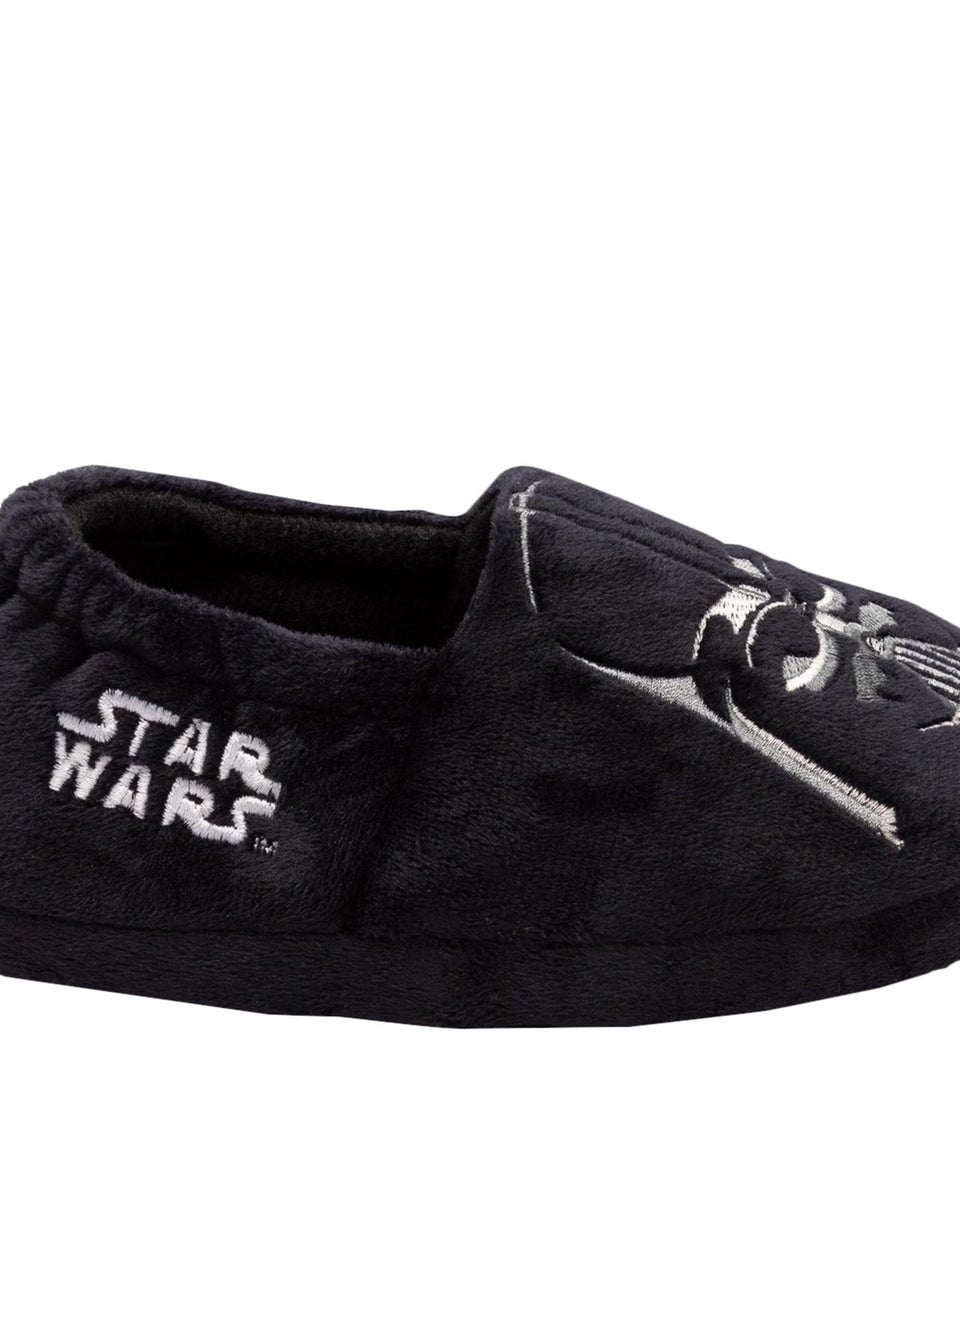 Star Wars Boys Black Darth Vader Slippers